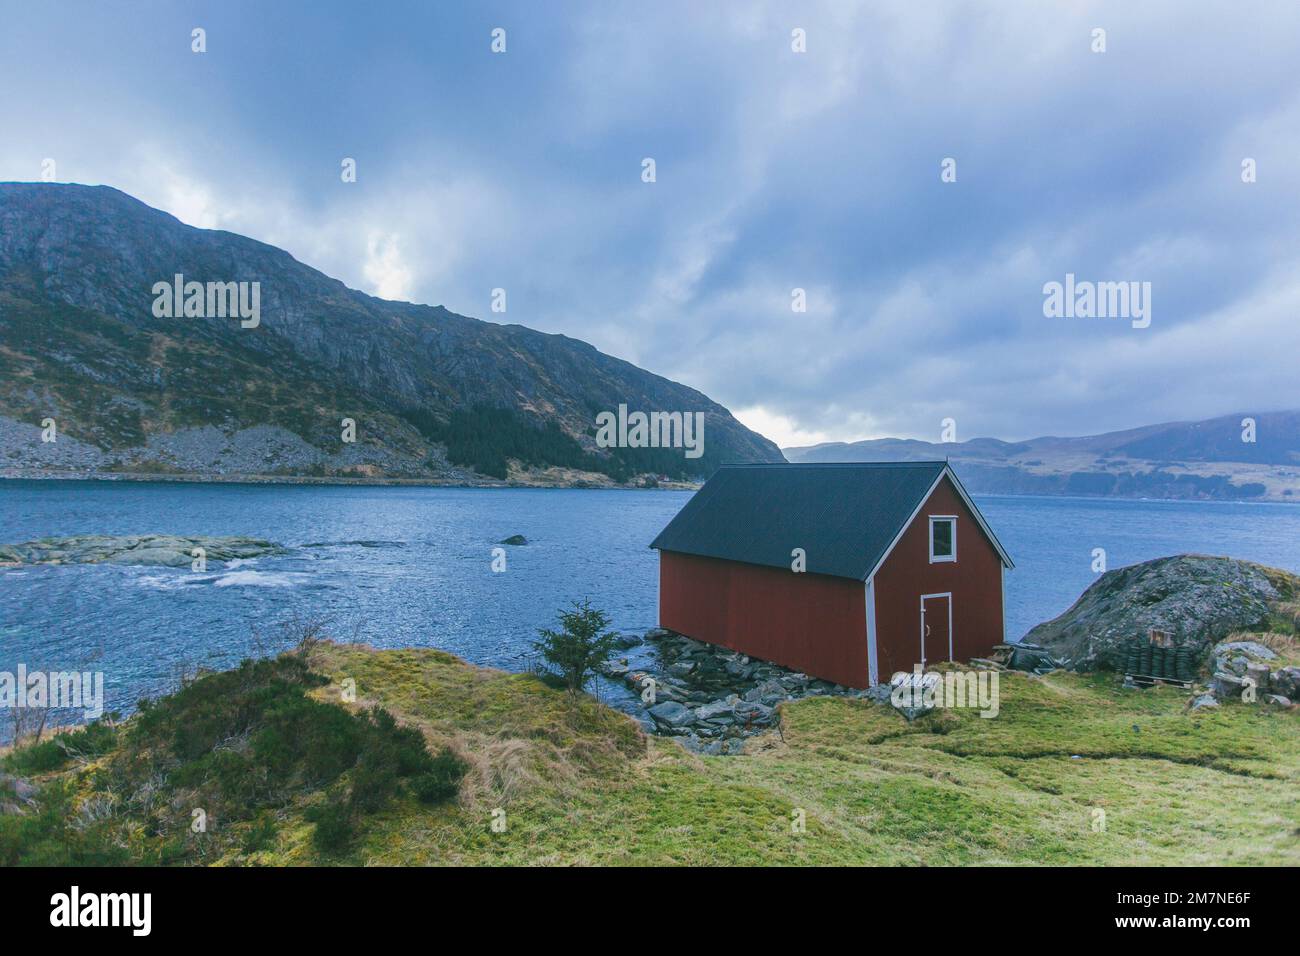 Solitario capanna di pesca rossa sul fiordo in Norvegia, tipico paesaggio fiordo con piccole isole, isolamento dal mondo esterno, casa sul mare, rifugio iconico Foto Stock